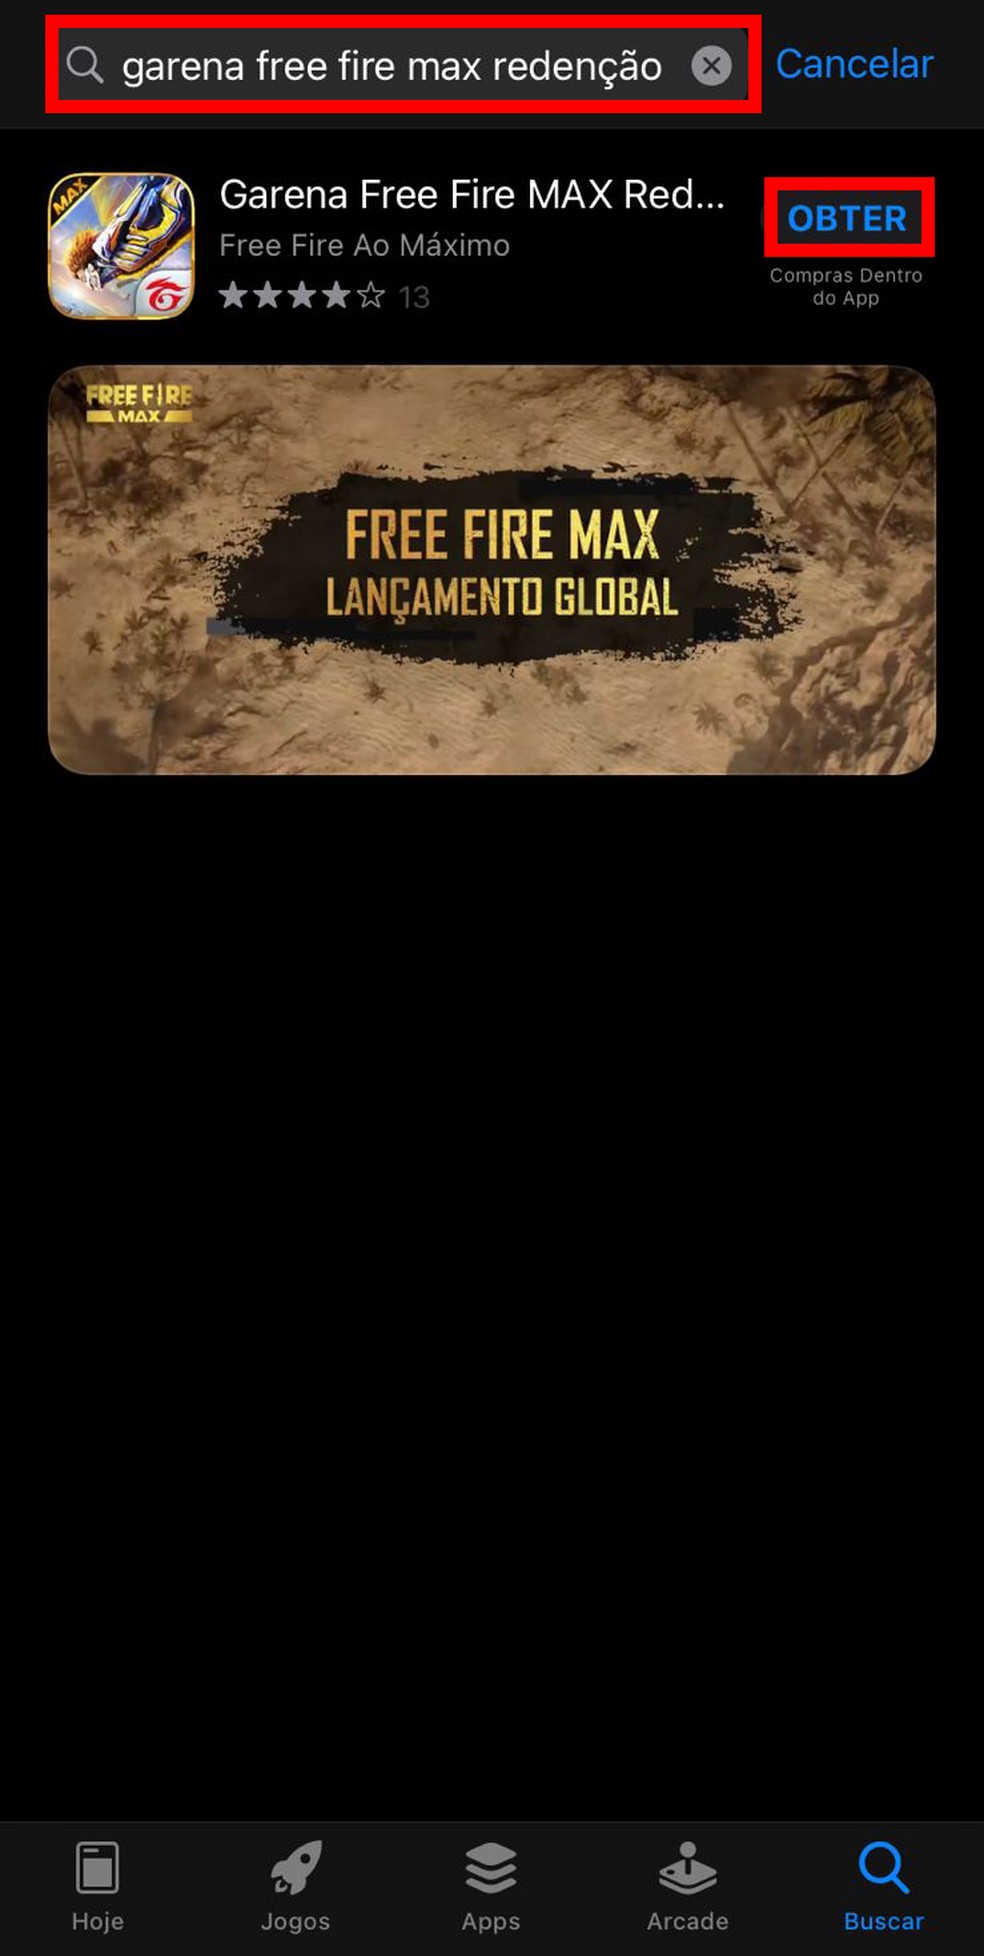 Como baixar o free fire max #freefire #garenafreefire #freefiremax